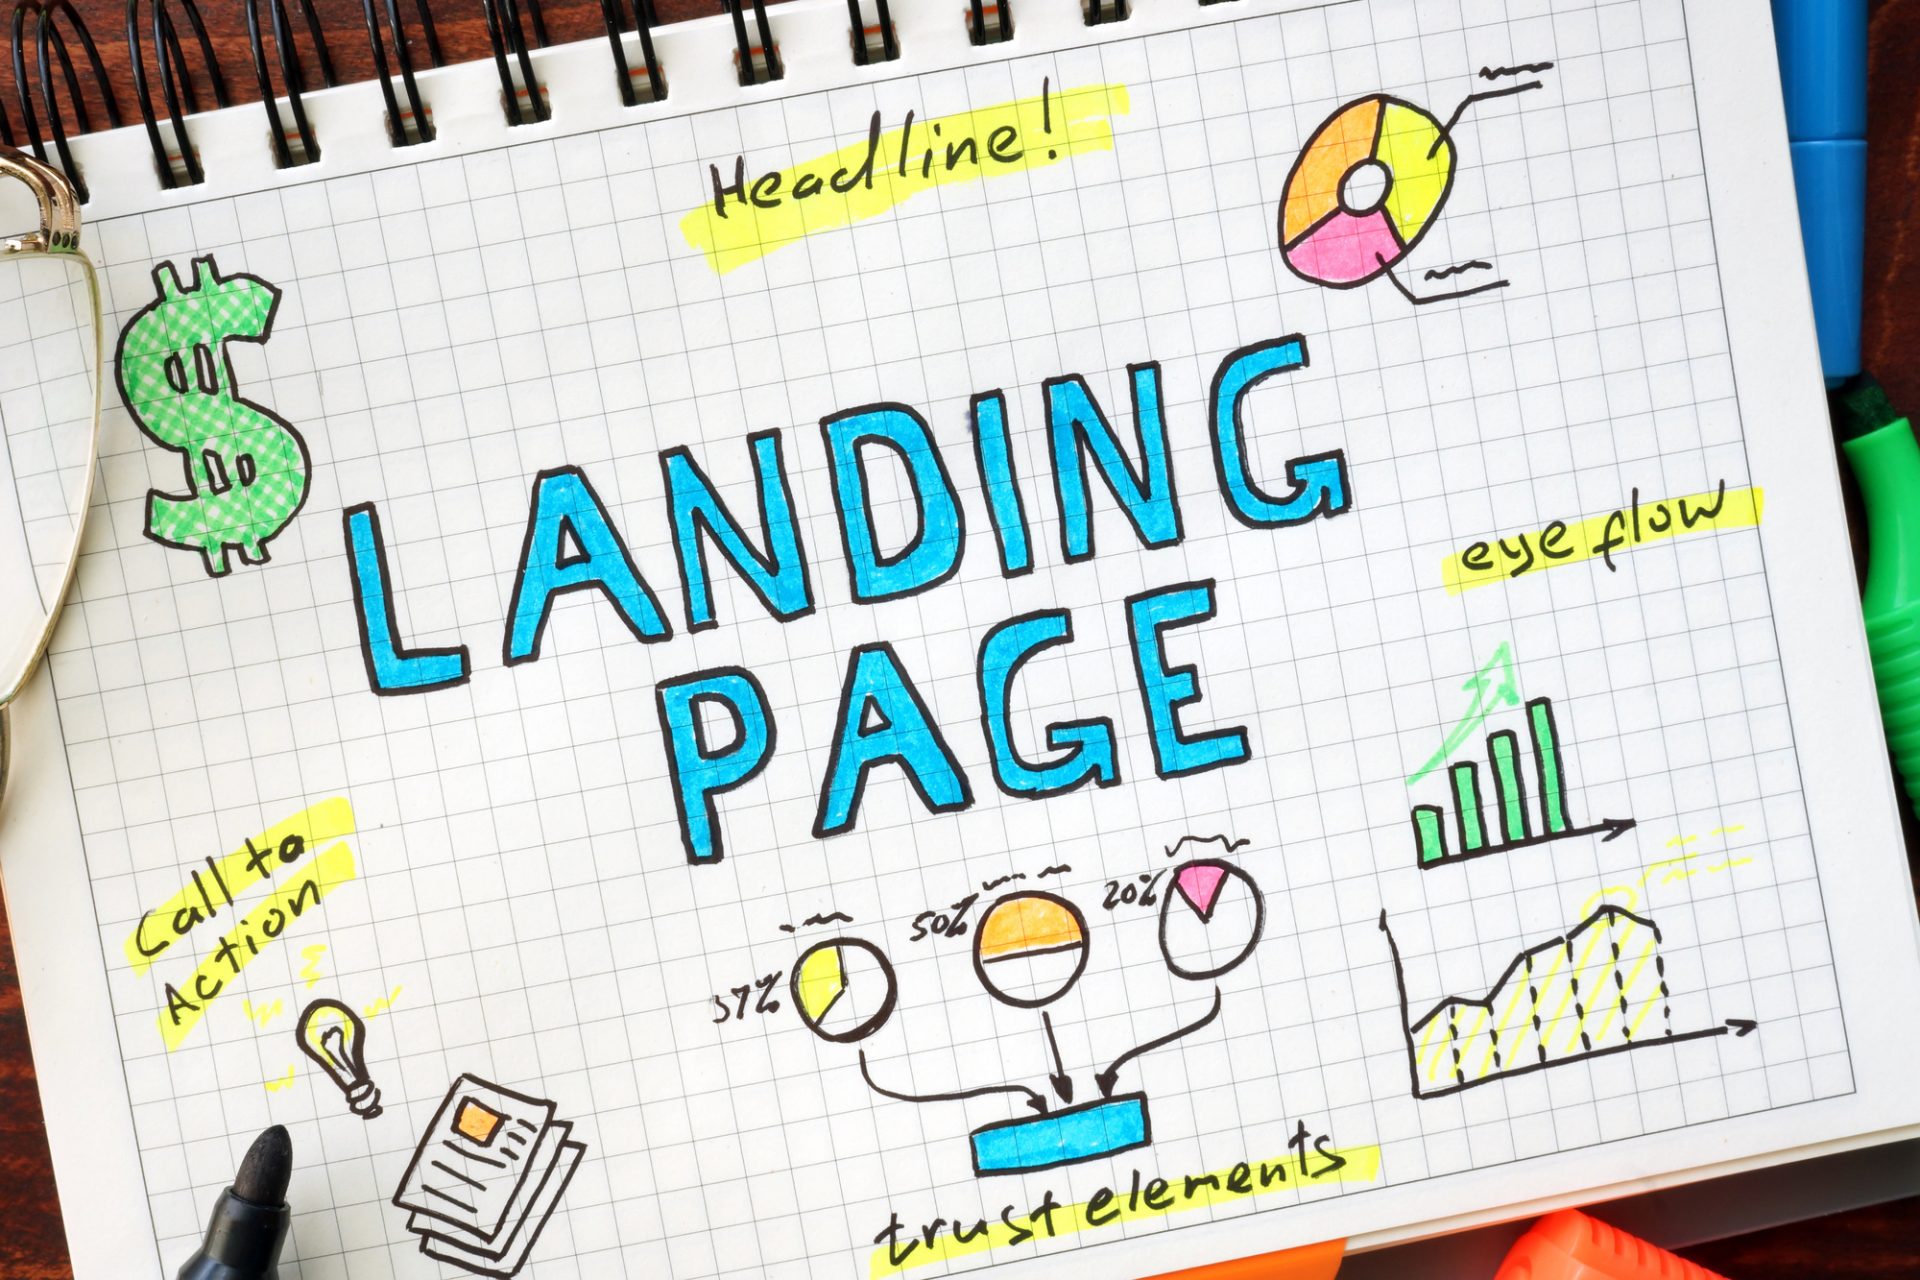 landing page design